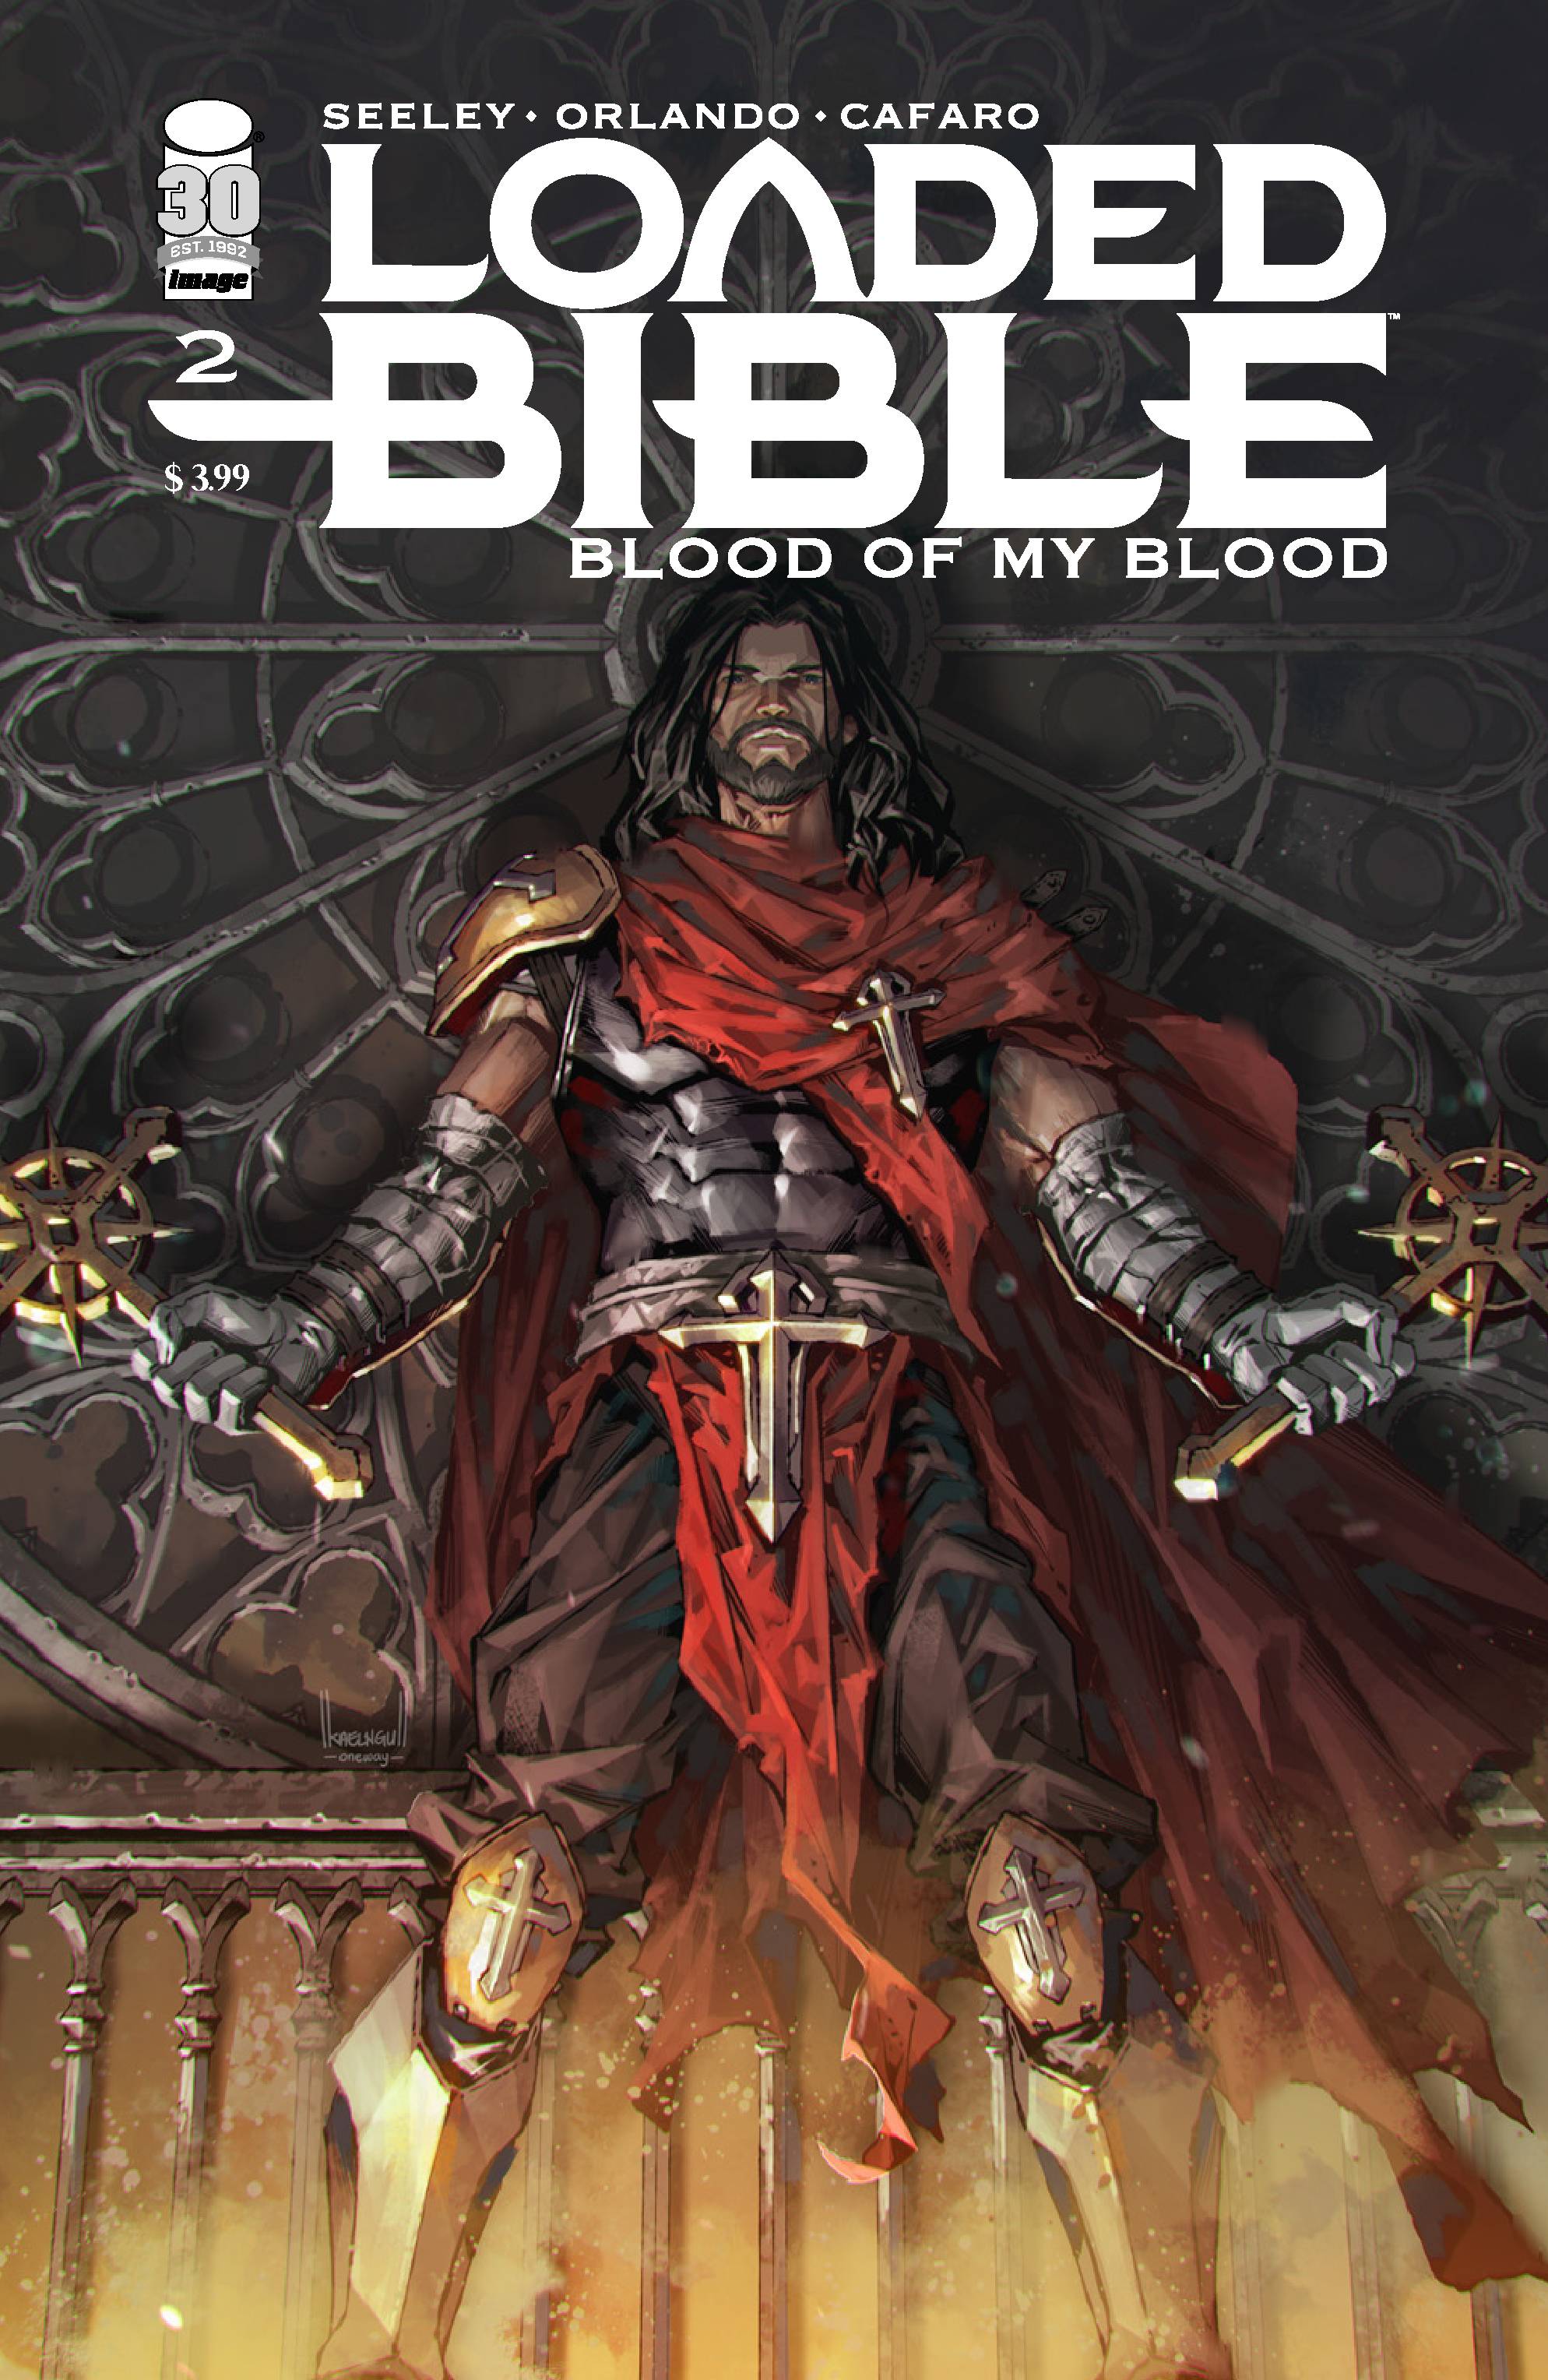 LOADED BIBLE BLOOD OF MY BLOOD #2 (OF 6) CVR C NGU (MR)